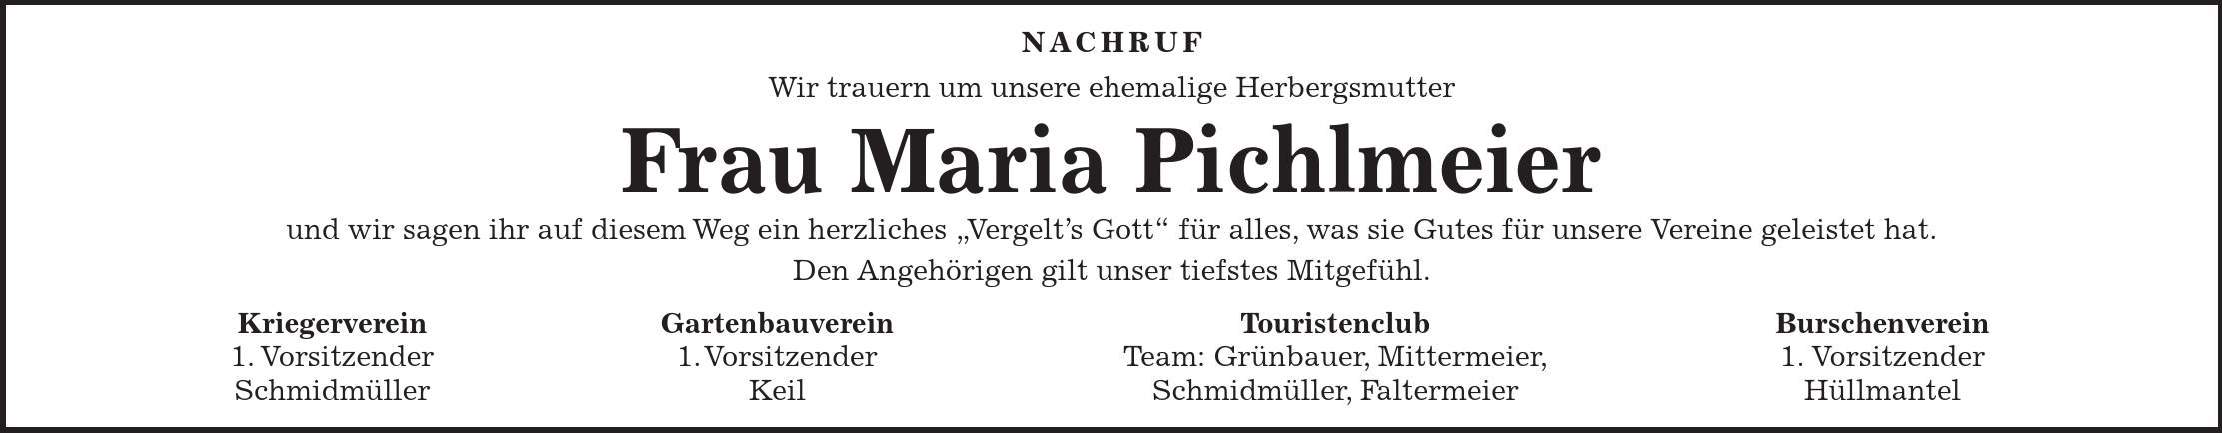 NACHRUF Wir trauern um unsere ehemalige Herbergsmutter Frau Maria Pichlmeier und wir sagen ihr auf diesem Weg ein herzliches 